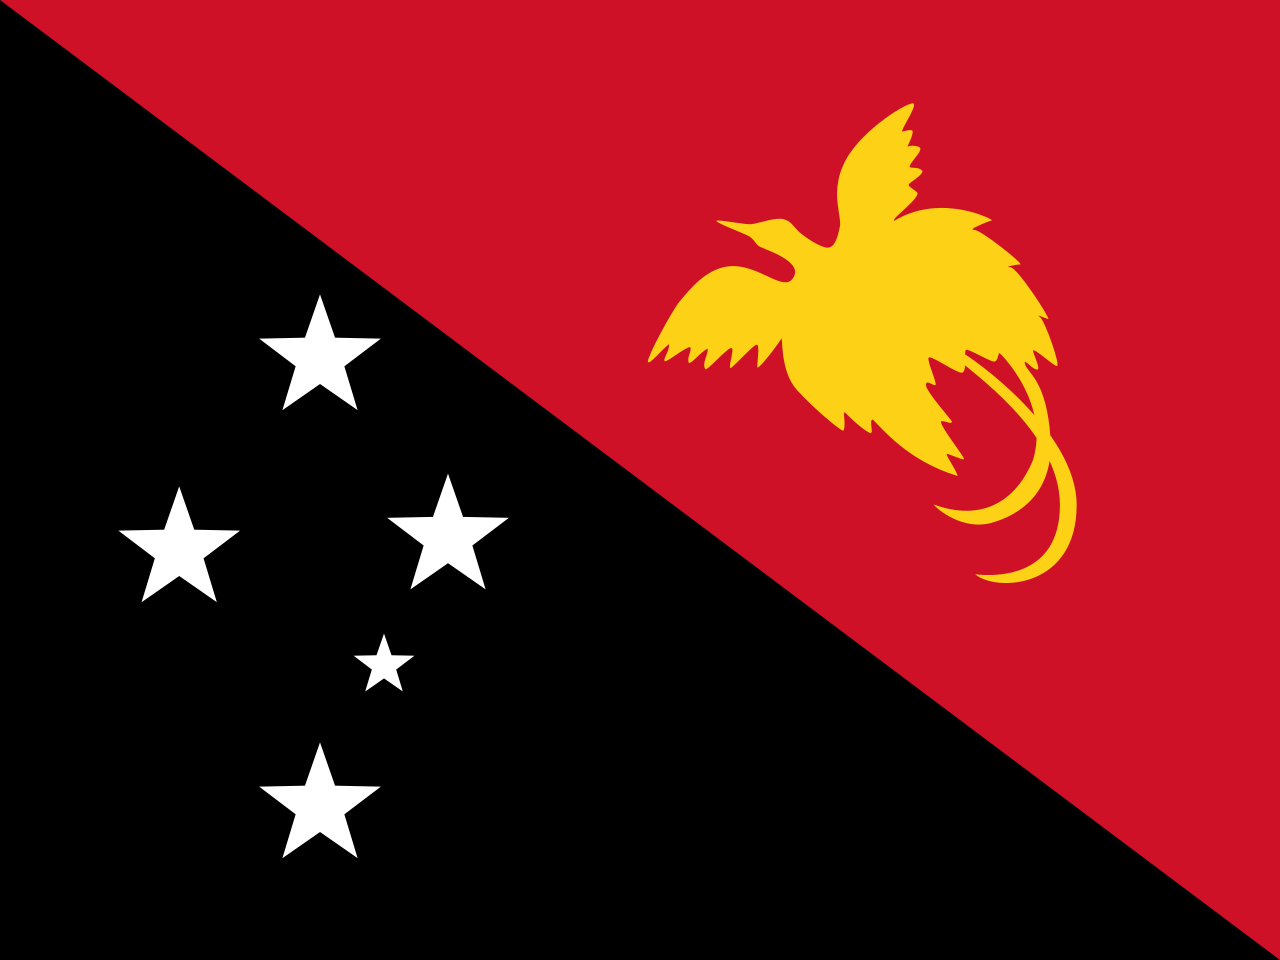 TESOL Papua New Guinea